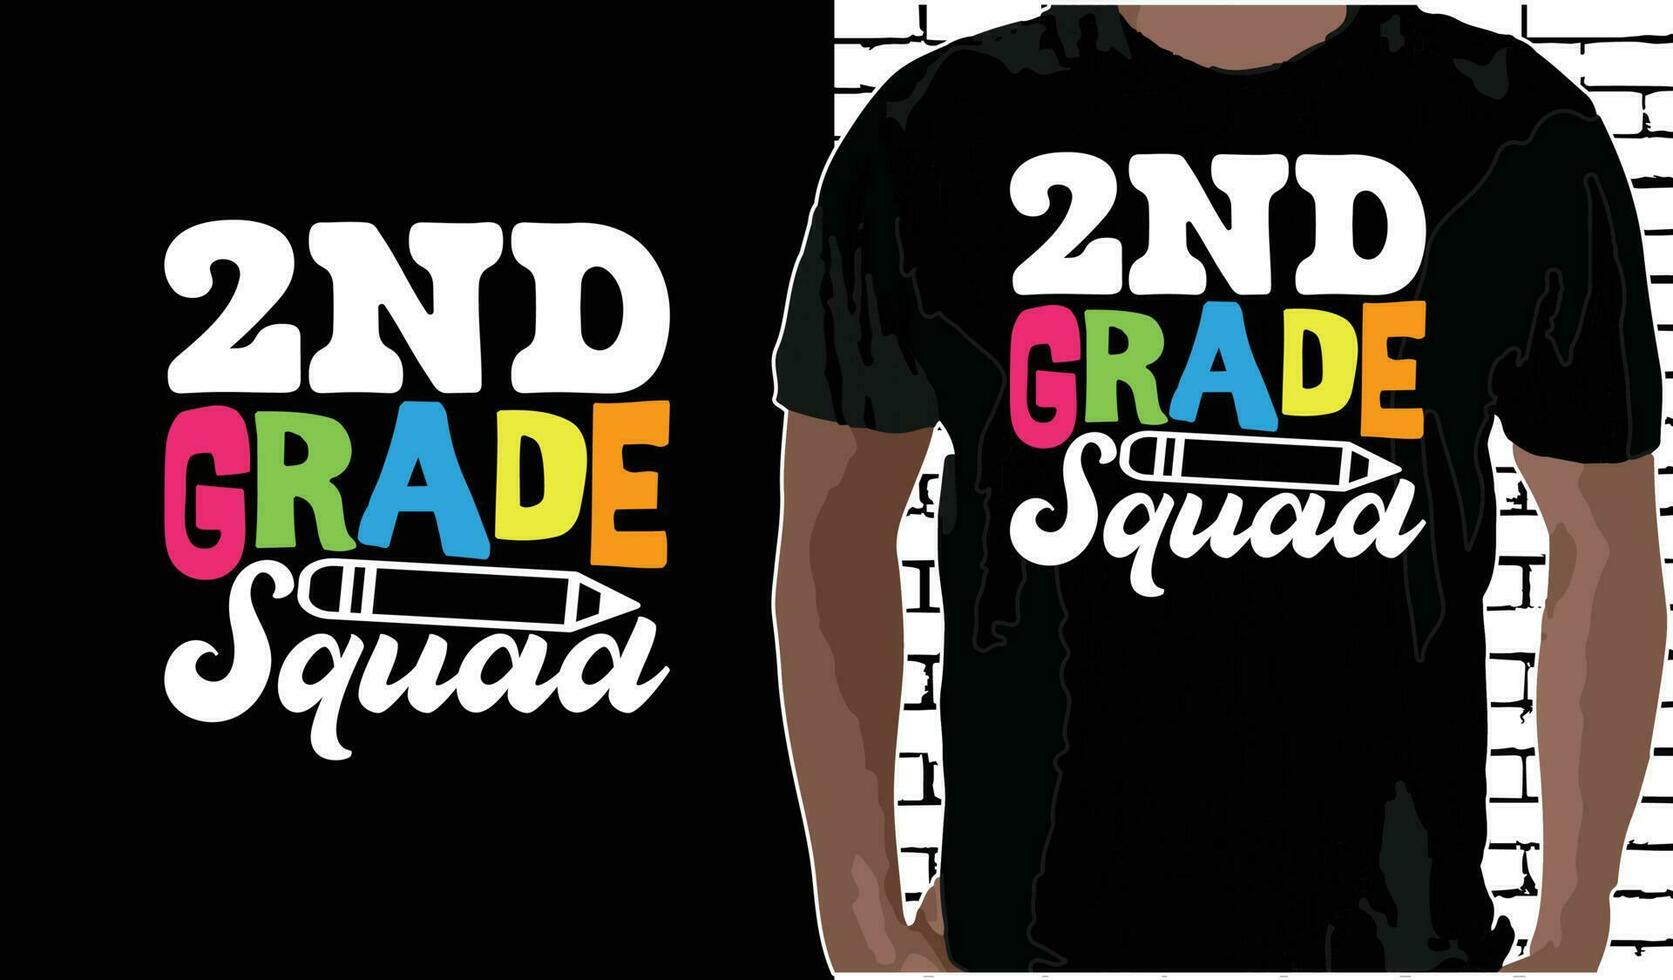 2do grado equipo t camisa diseño, citas acerca de espalda a escuela, espalda a colegio camisa, espalda a colegio tipografía t camisa diseño vector